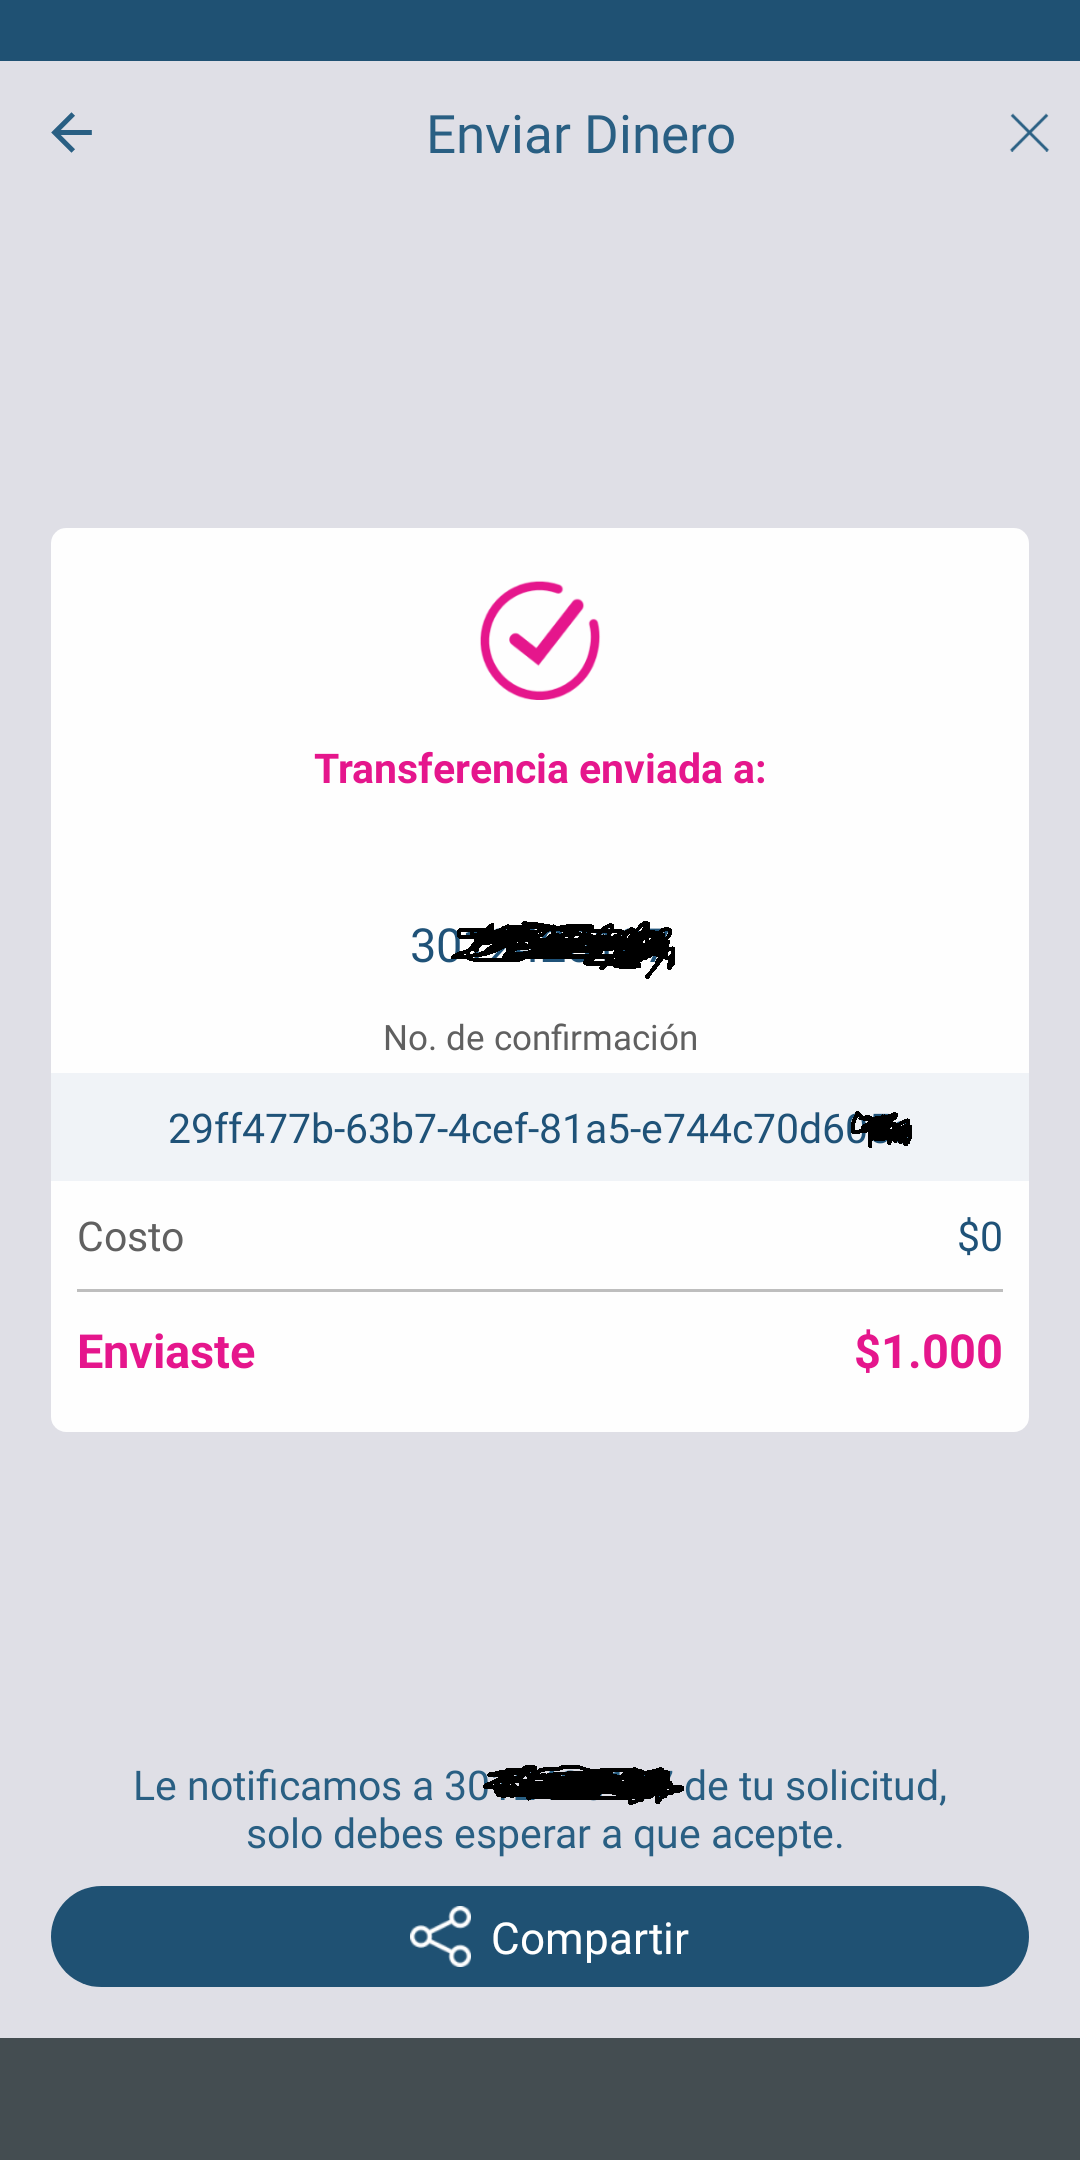 Enviar Dinero - Transferncia 3 JUN 2021.png